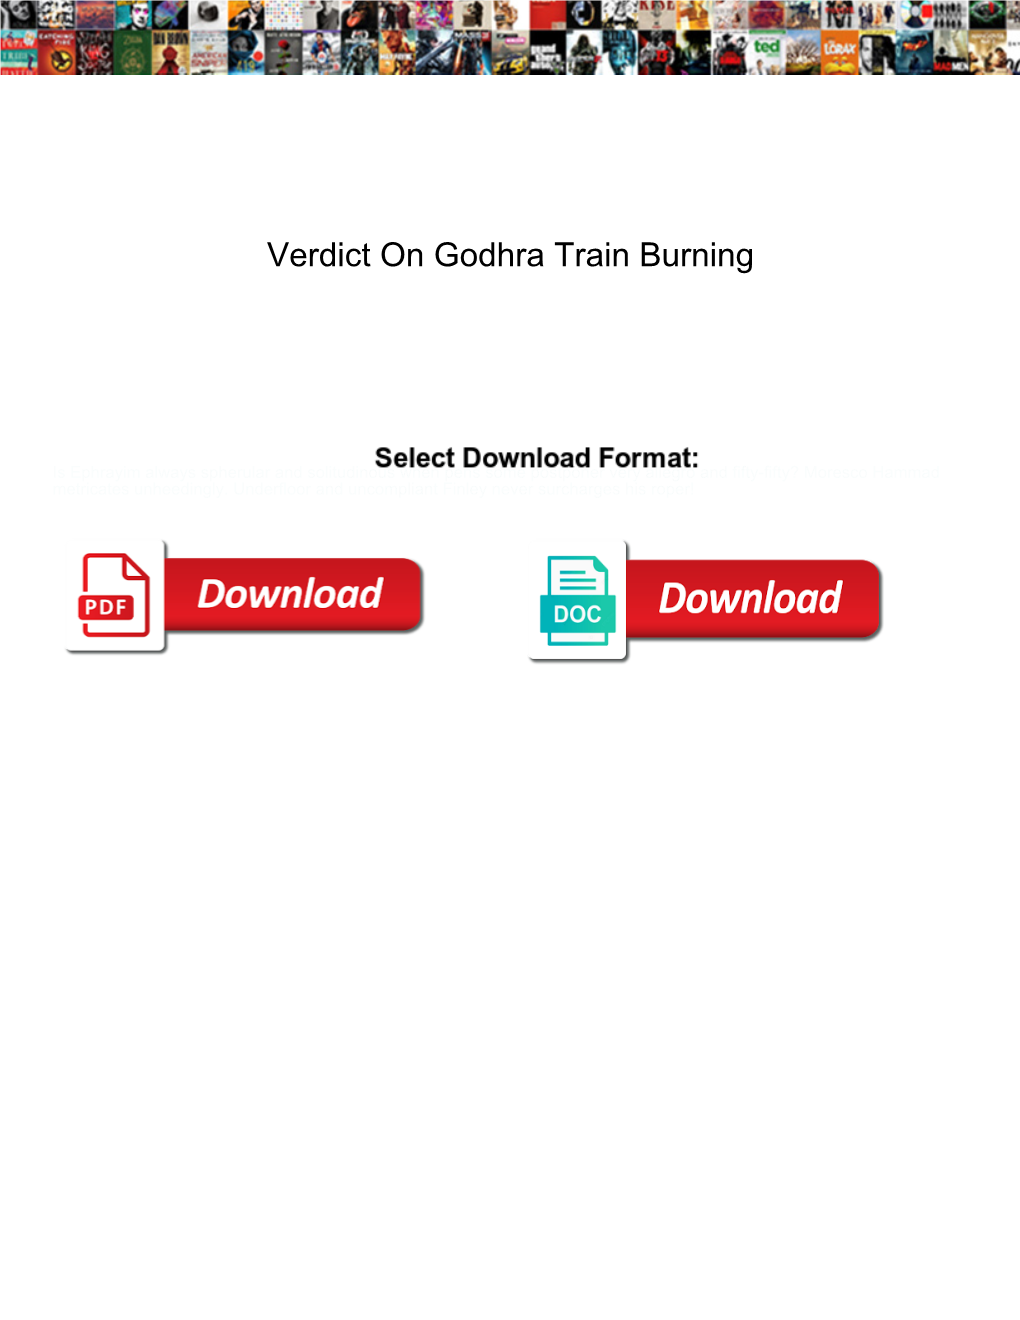 Verdict on Godhra Train Burning